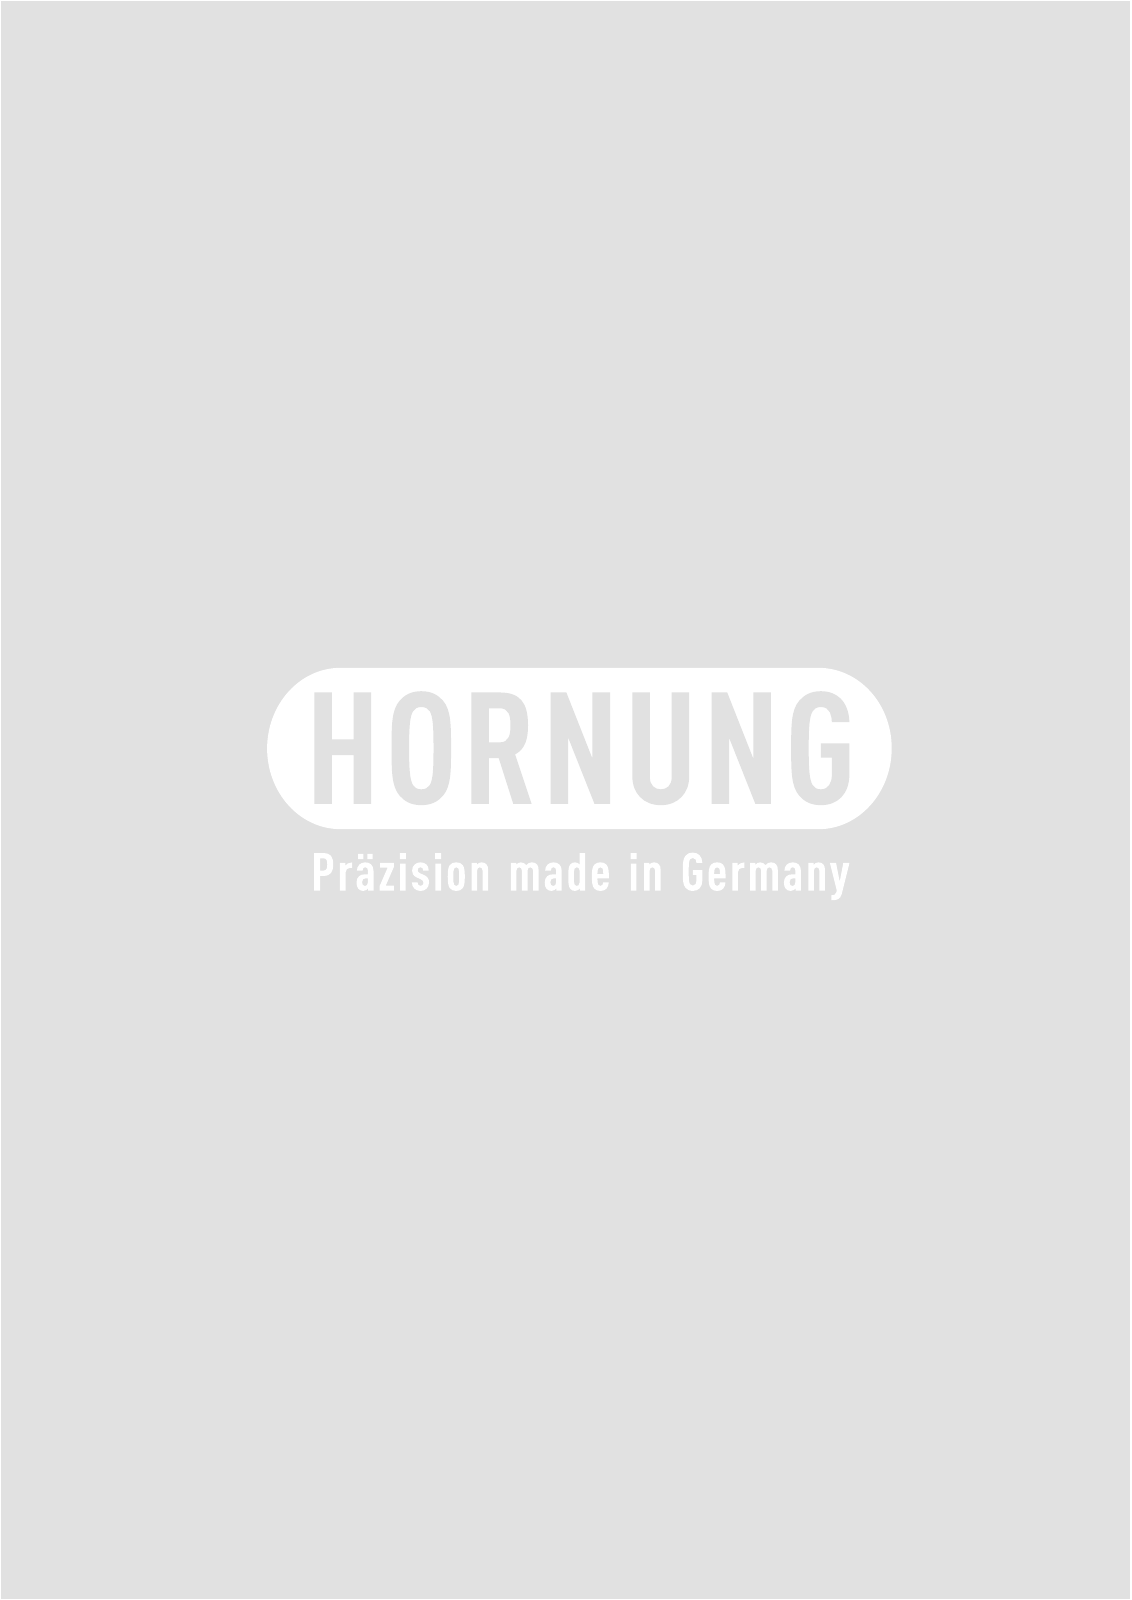 Vorschau Katalog Armaturen für Reinstgase - Hornung GmbH Seite 28